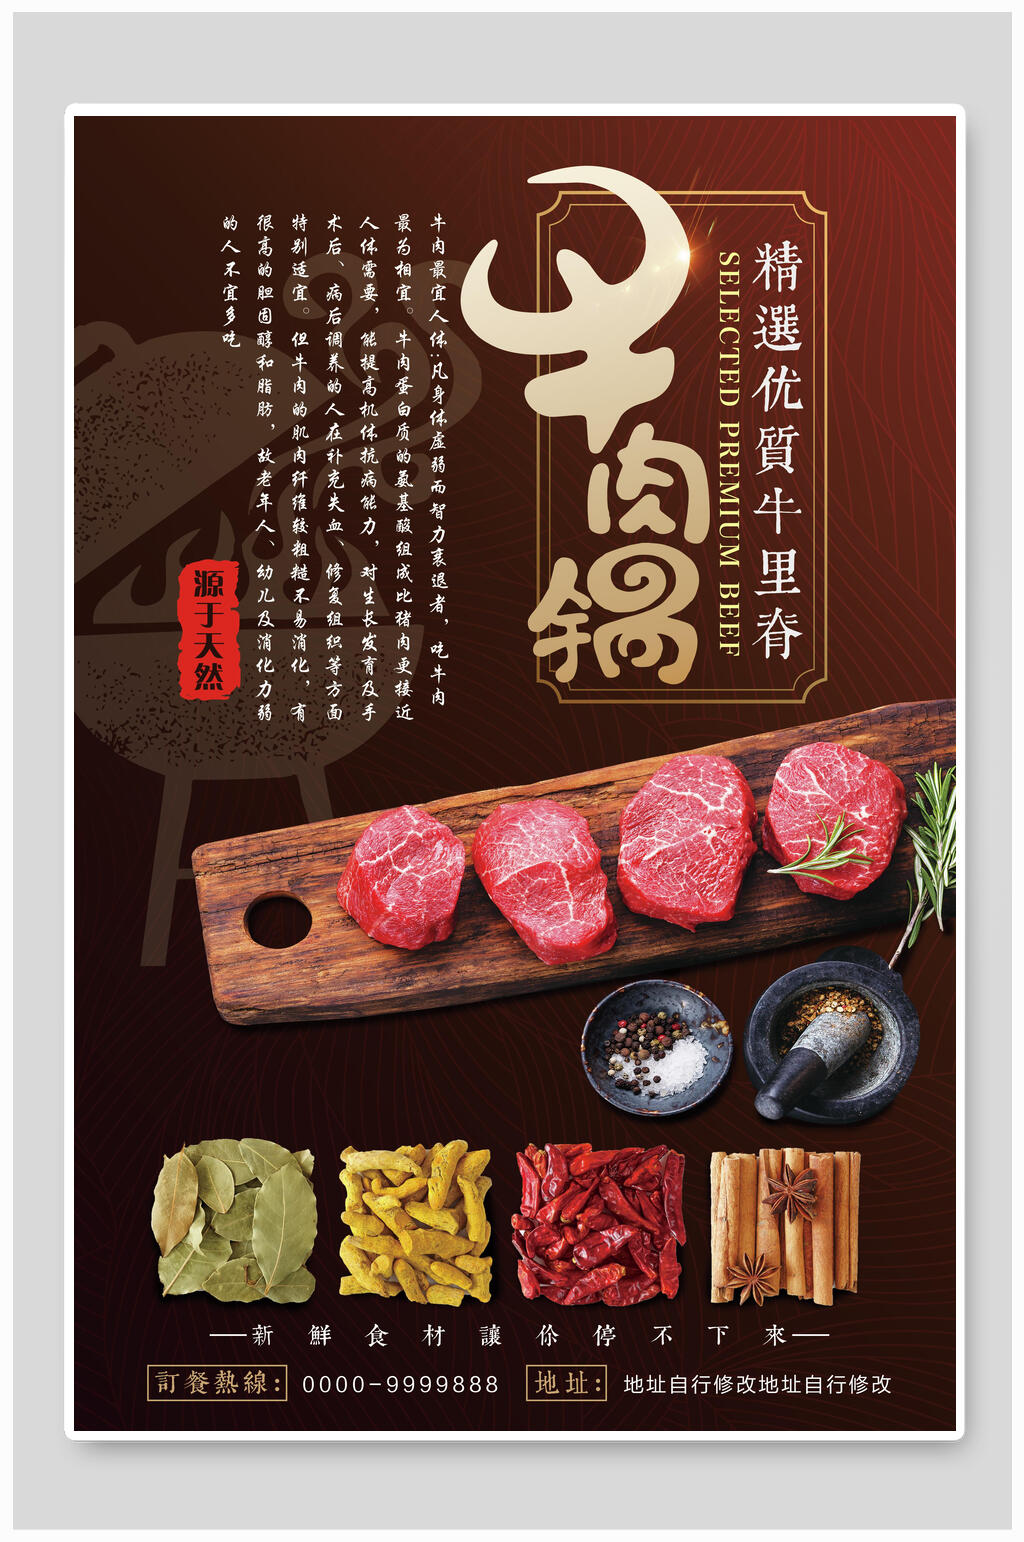 众图网独家提供牛肉火锅火锅店宣传海报素材免费下载,本作品是由方方